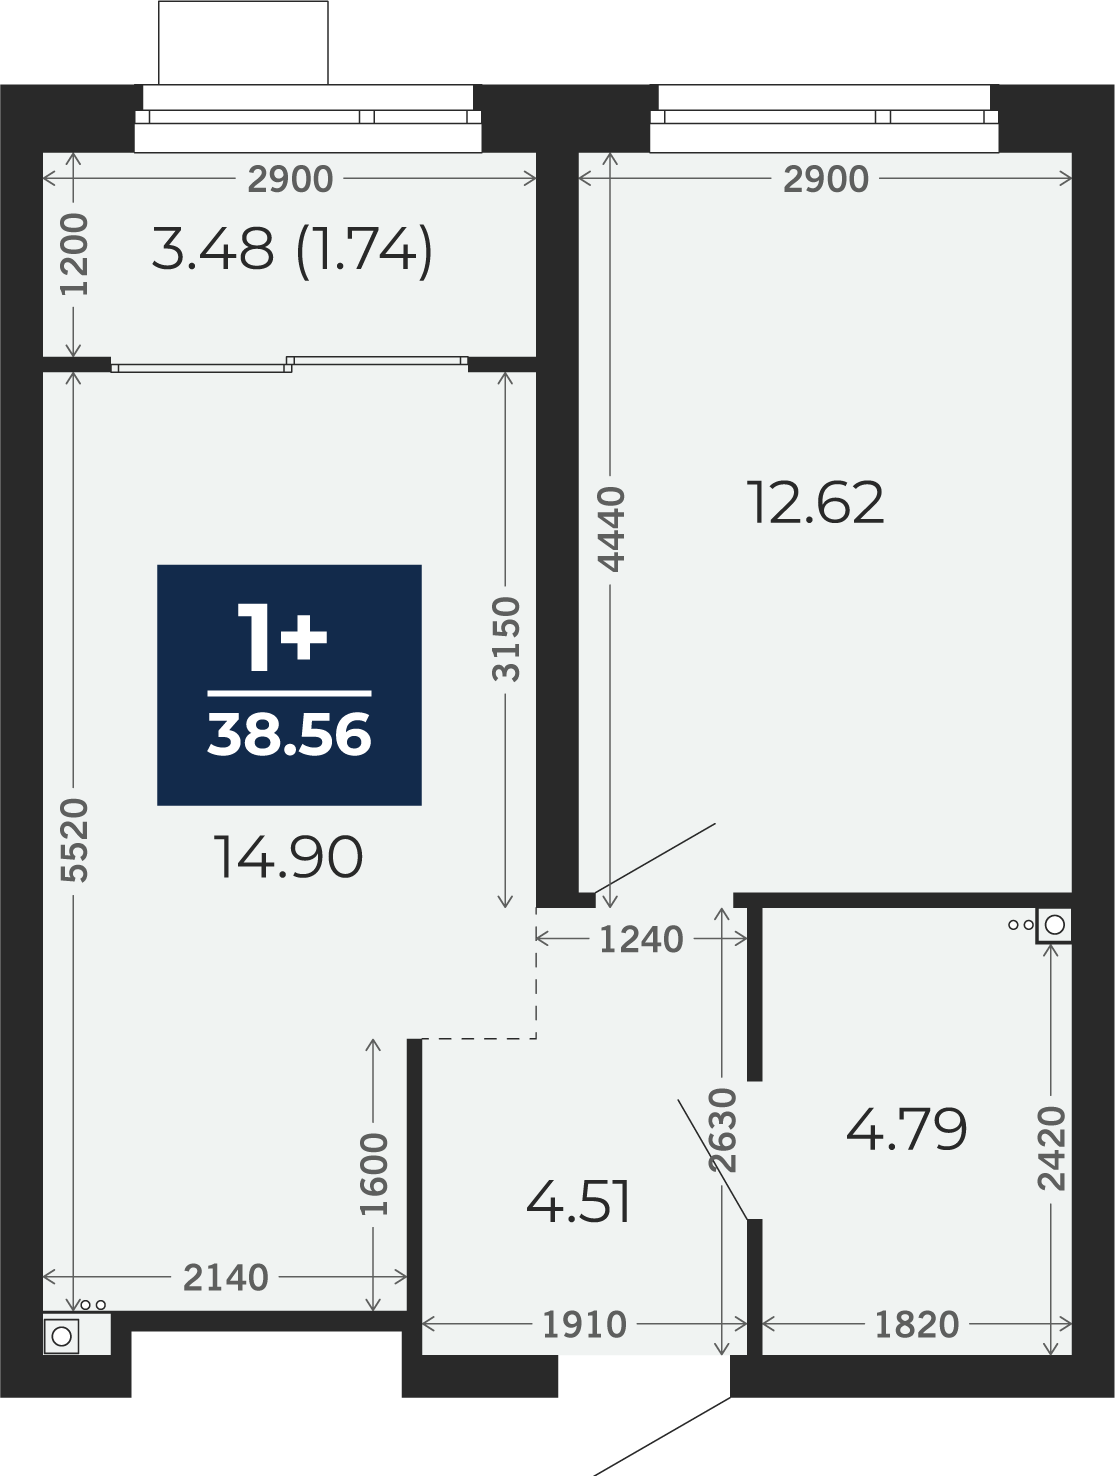 Квартира № 121, 1-комнатная, 38.56 кв. м, 2 этаж